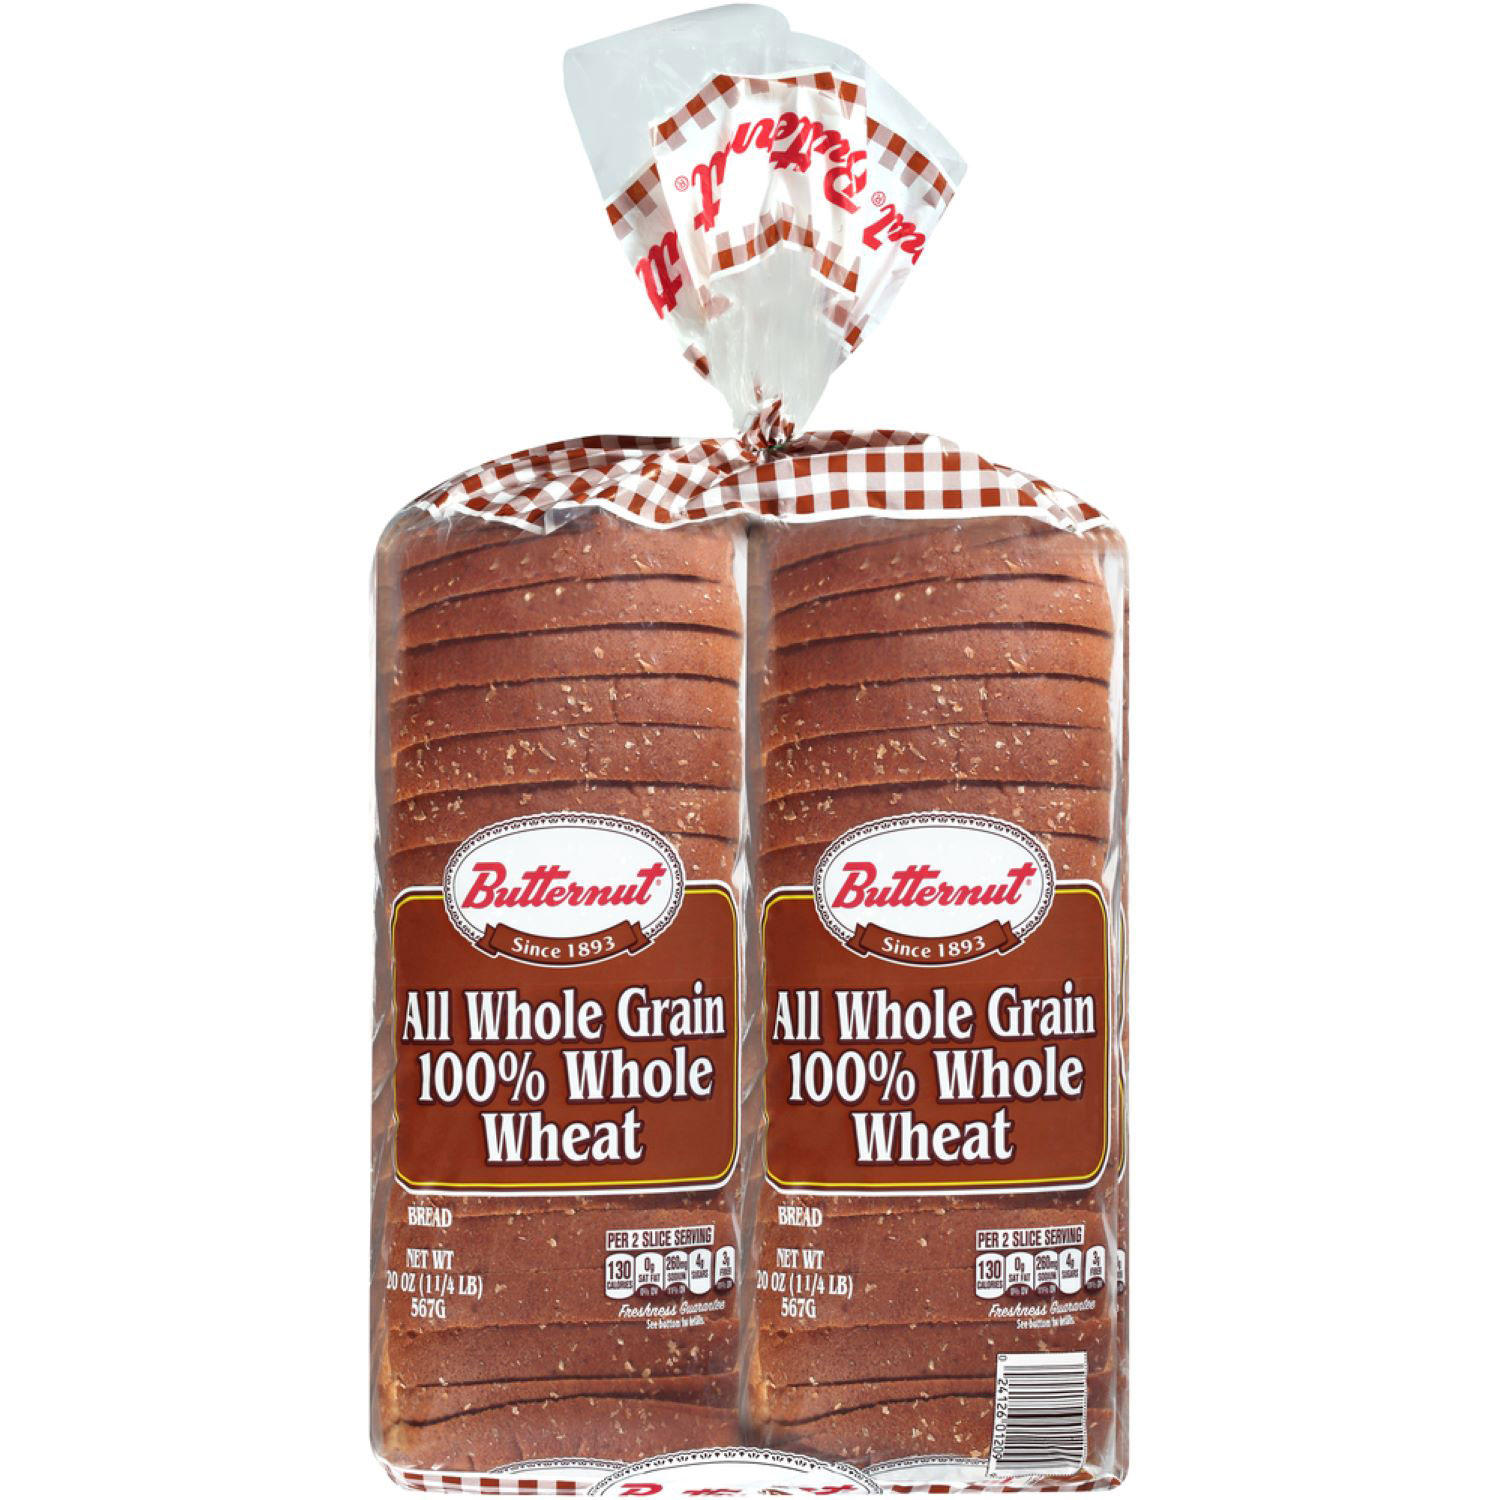 Butternut 100% Whole Wheat Bread (20 oz. / 2 pk.)